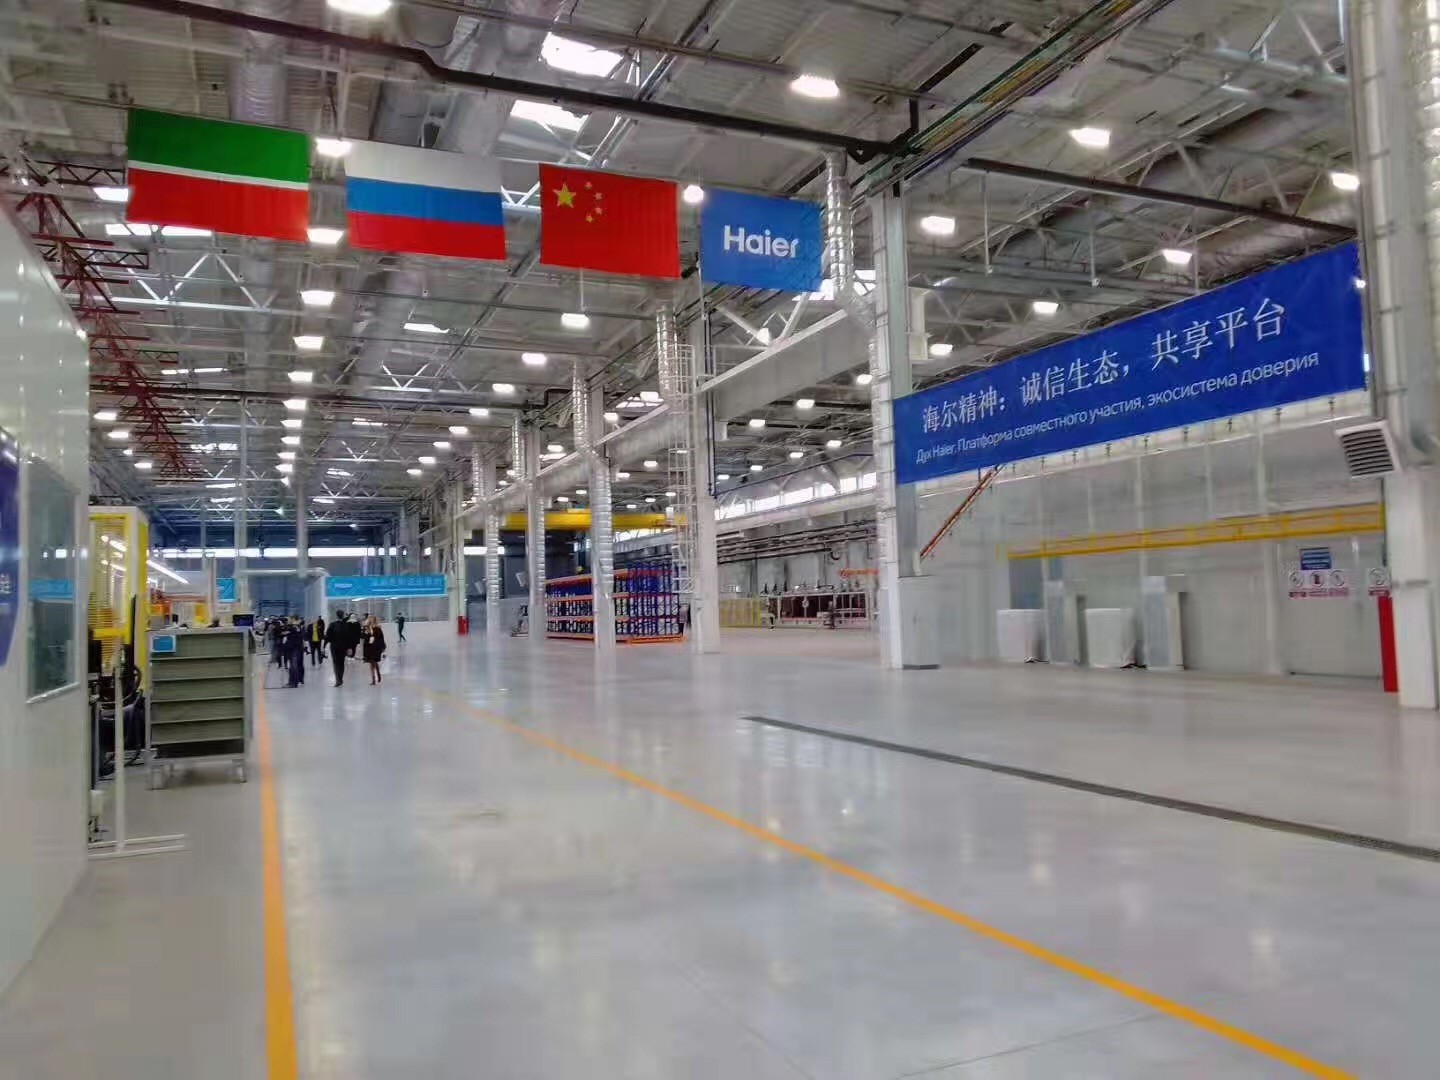 海尔洗衣机俄罗斯互联工厂为中国智造提供全新范式-最极客